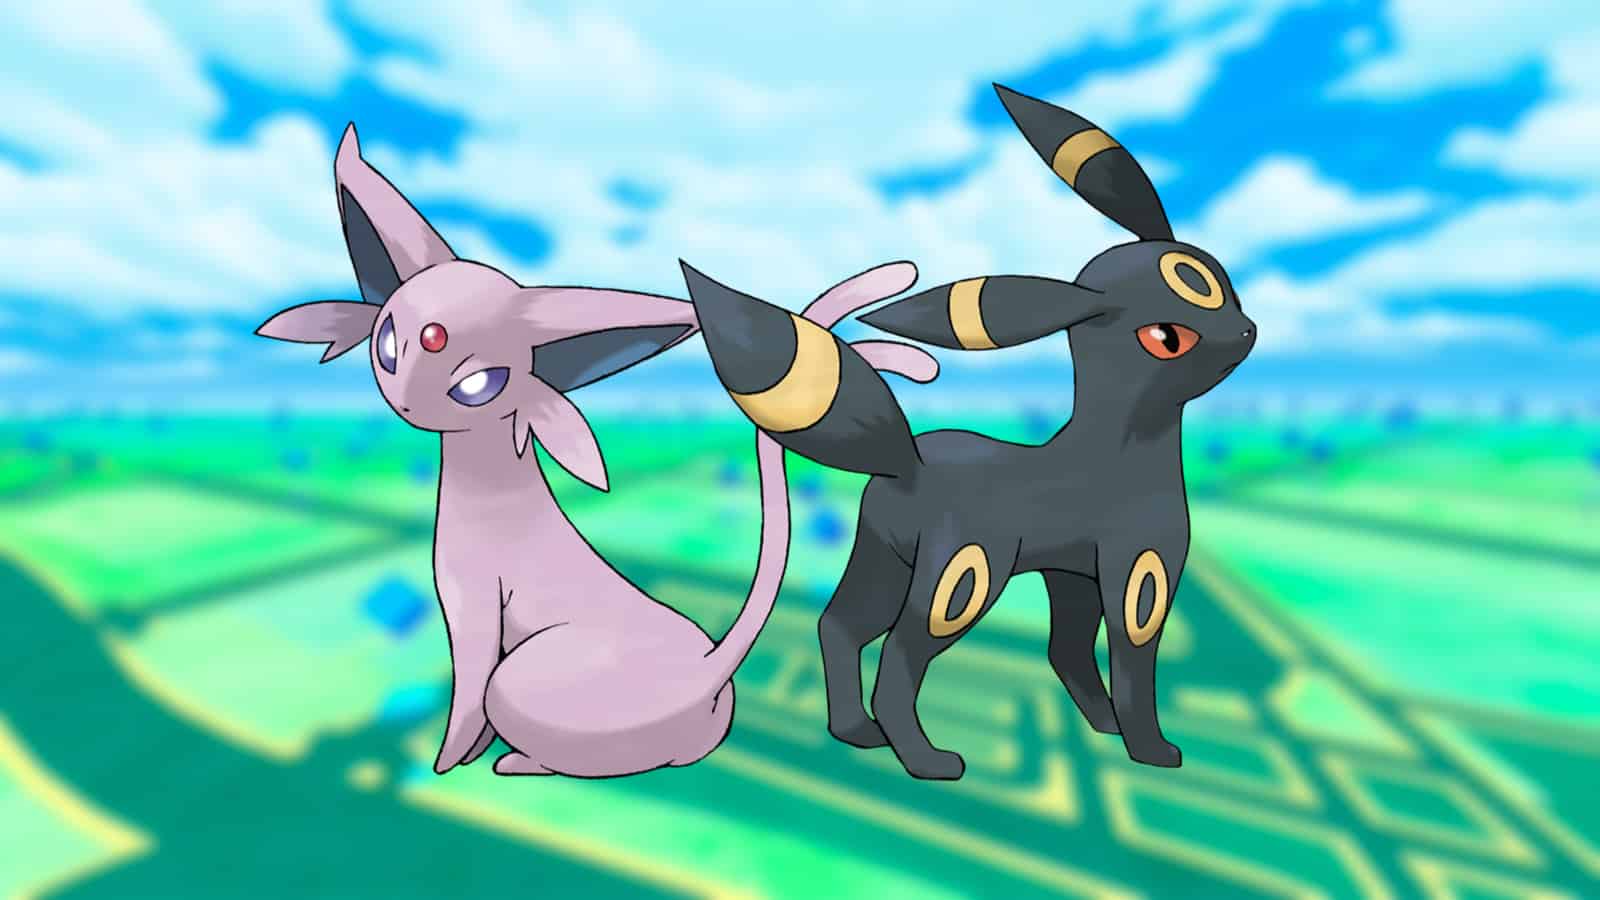 Pokémon Go Eevee evolution guide